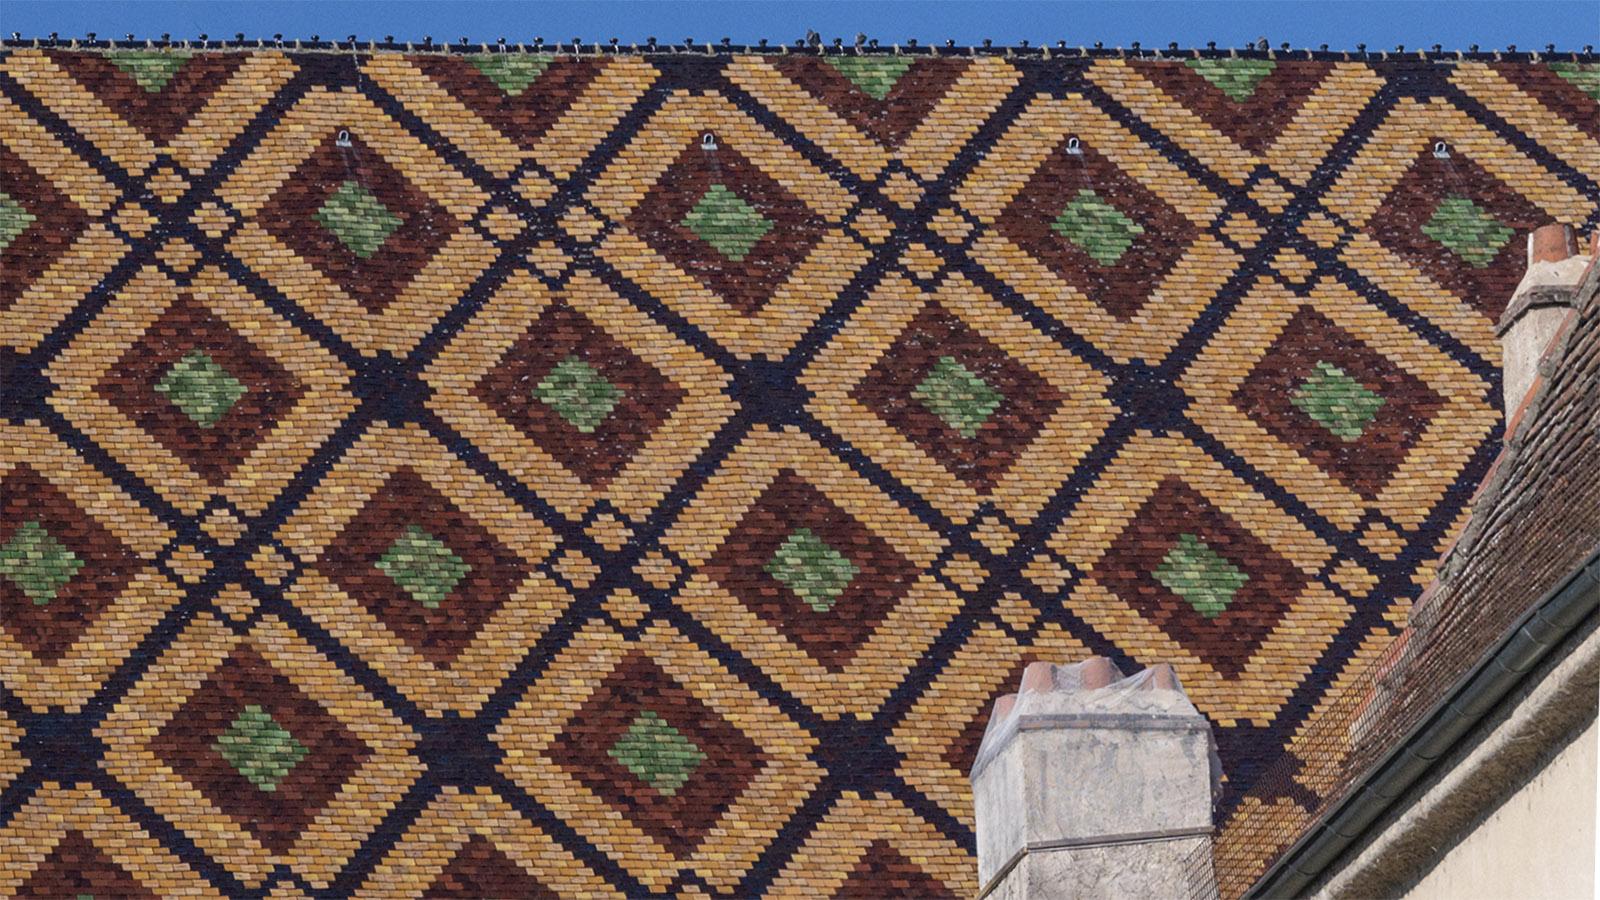 Das glasierte Dach von Kloster Brou im Detail. Foto: Hilke Maunder